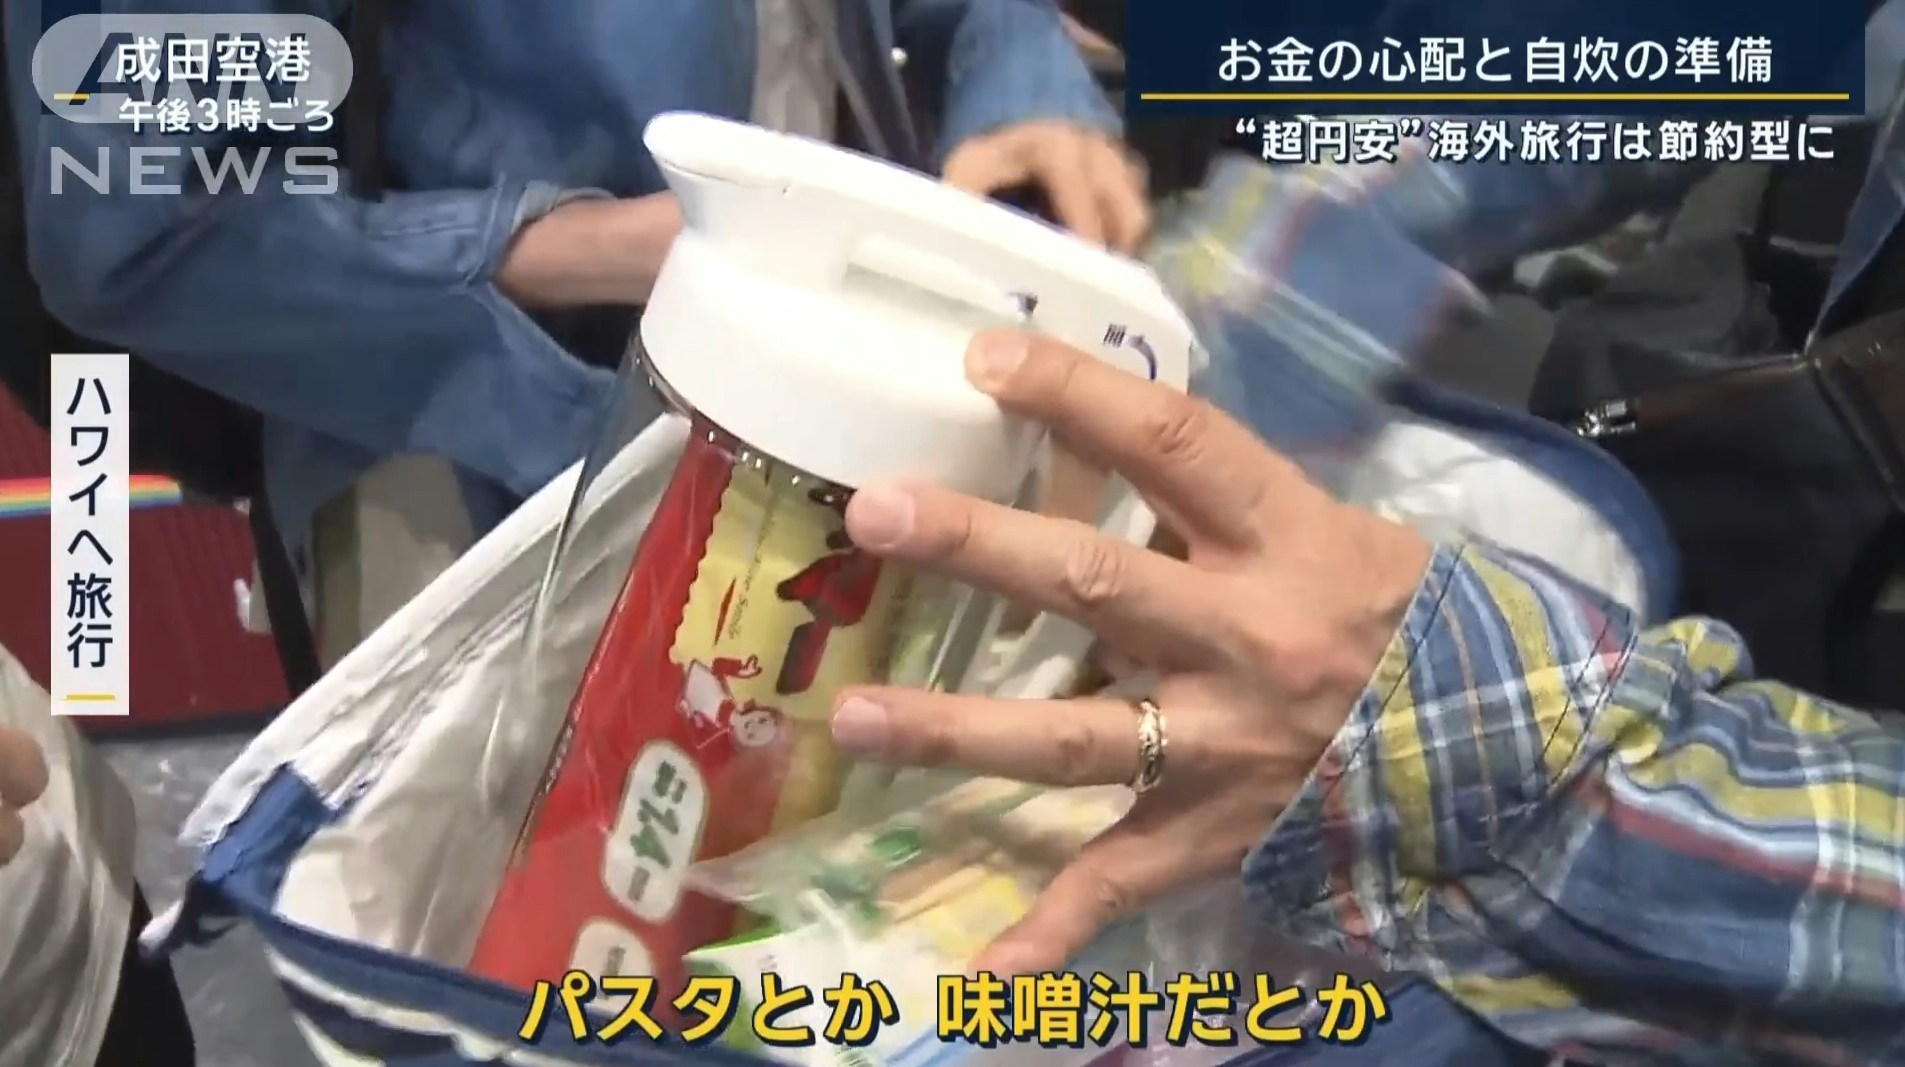 黄金周连假，日本人兴奋至海外旅游，但为了节省花费，有民众出国带著白米饭、泡面，想自行烹饪解决餐食，或是减少逛街购物的行程。（YouTube@ANNnewsCH）